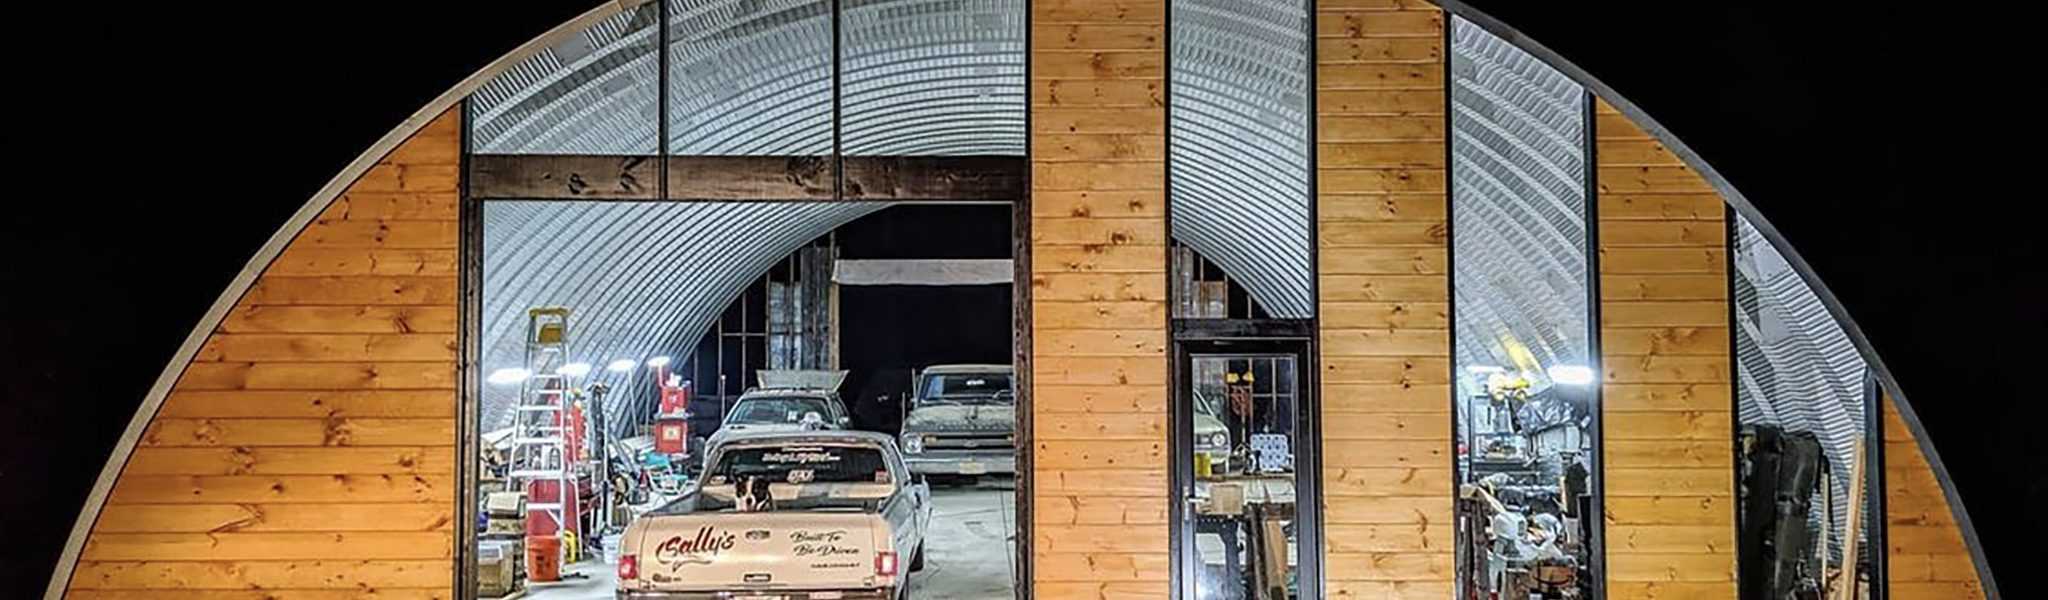 Sally’s Speed Shop | Quonset Hut Garage